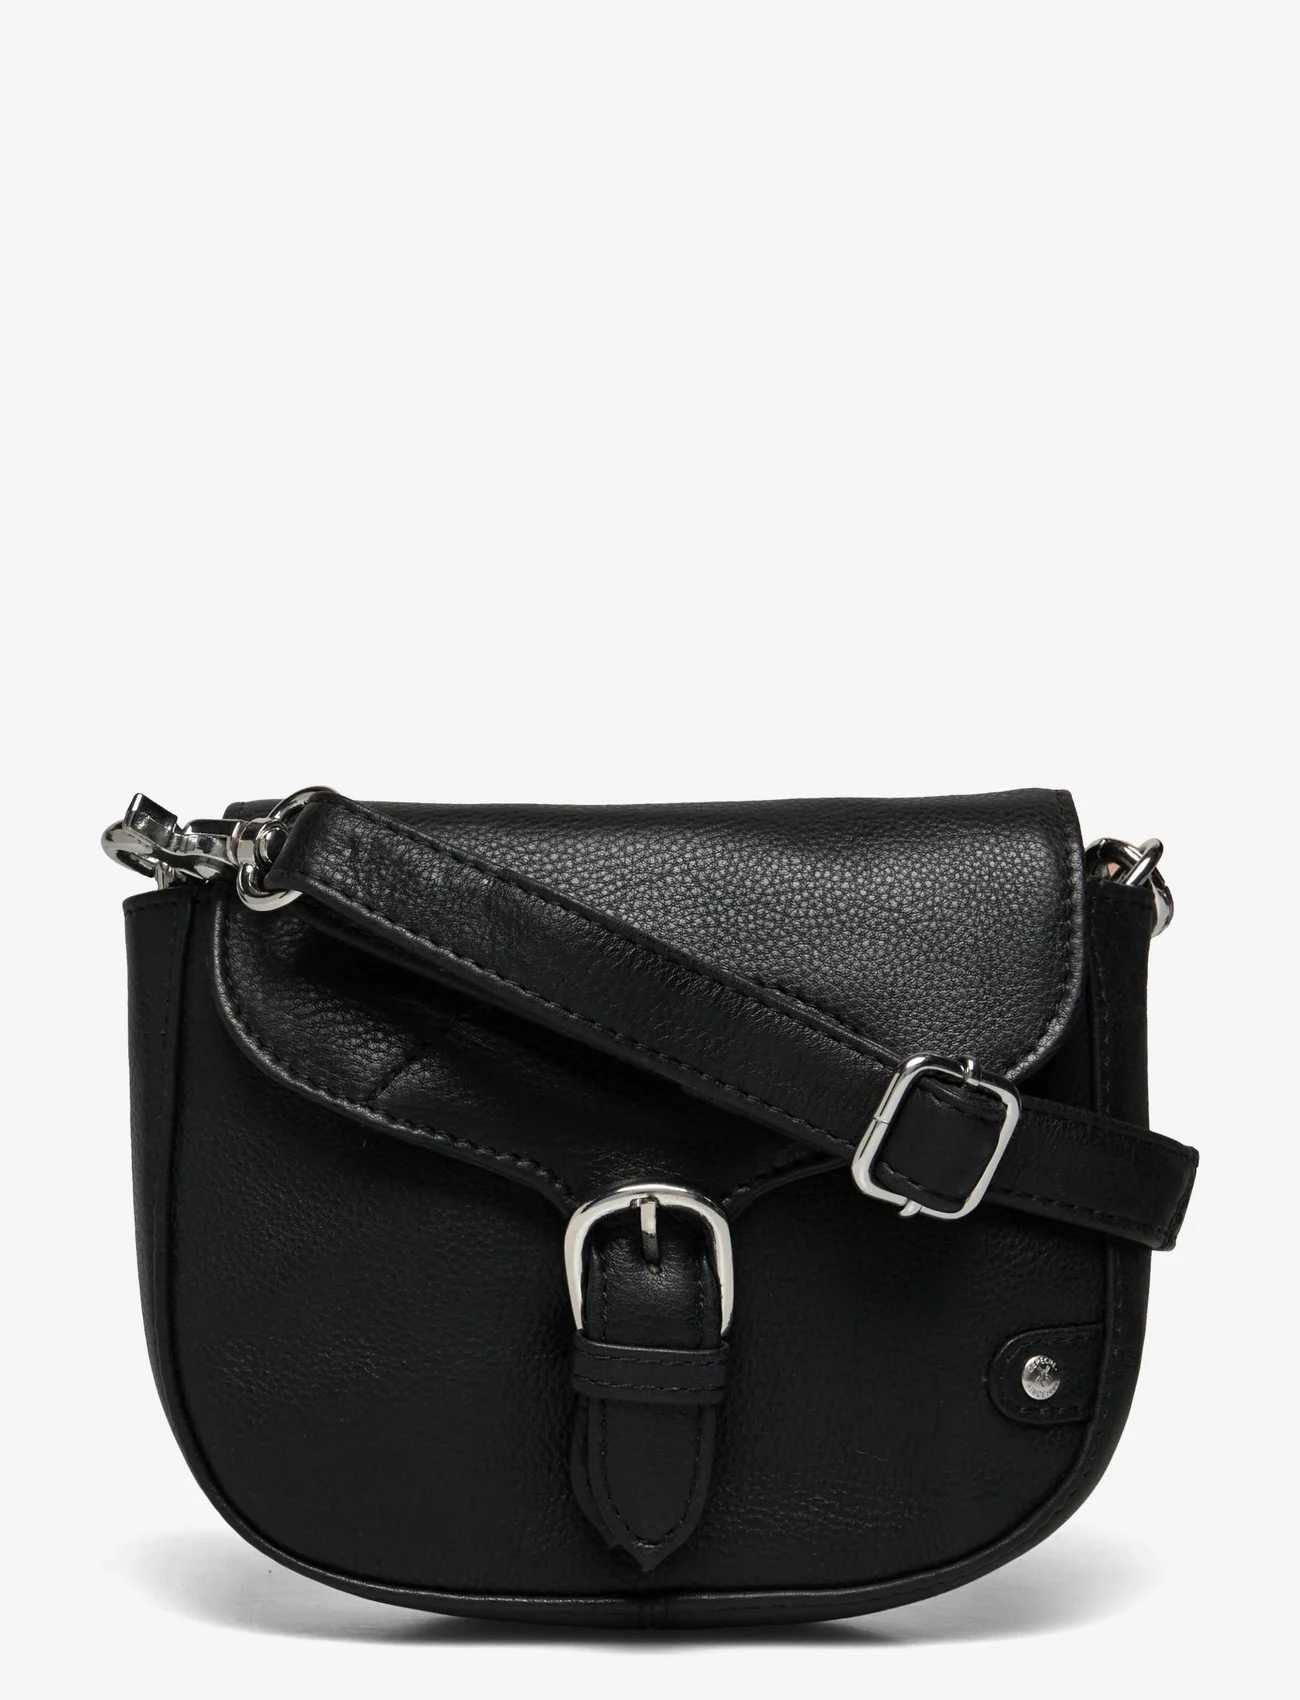 DEPECHE - Small bag / Clutch - festtøj til outletpriser - 099 black (nero) - 0